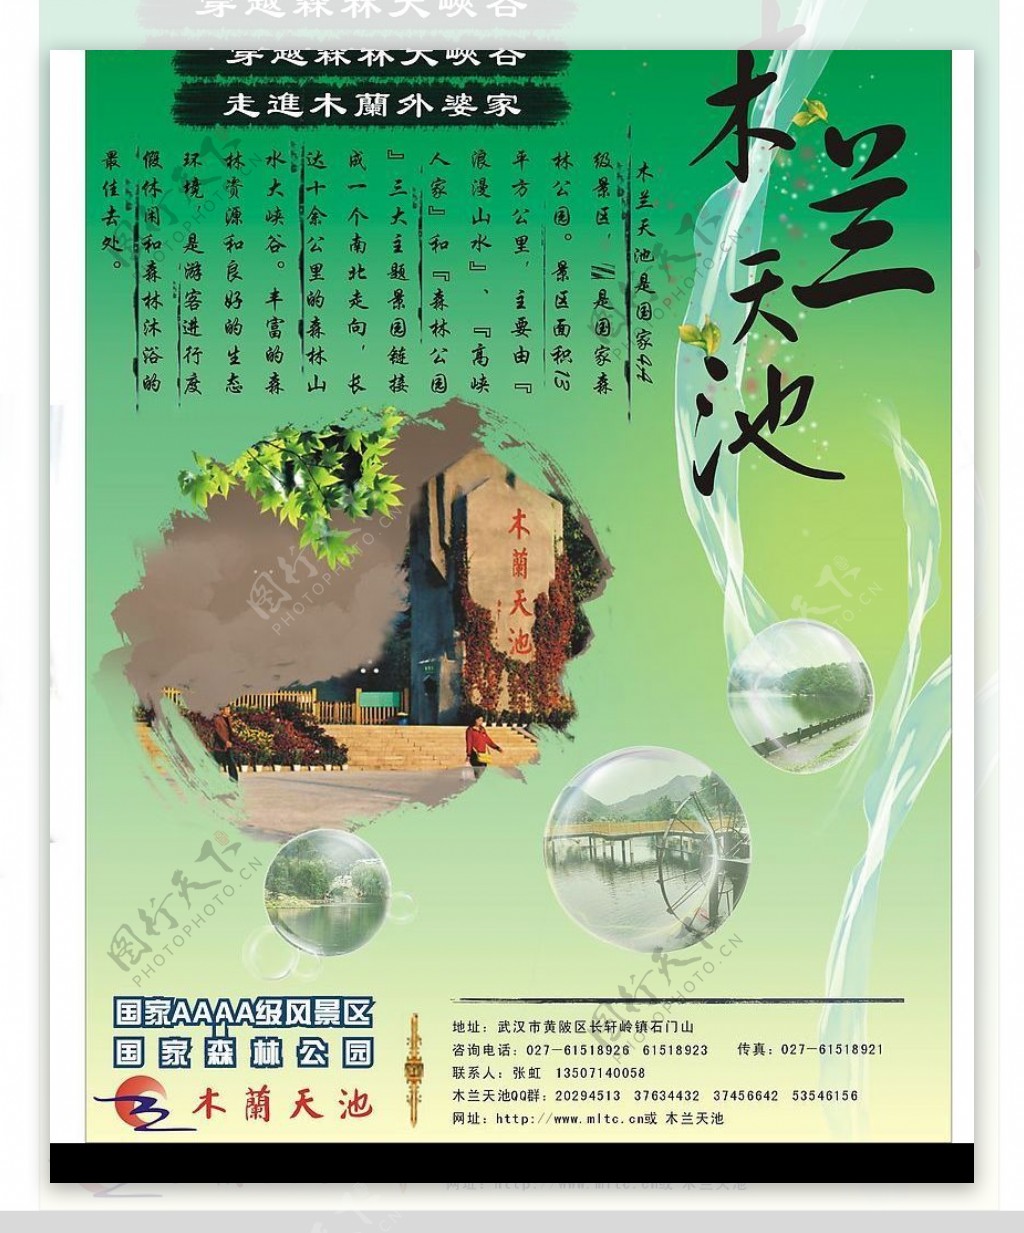 木兰天池旅游景区电梯口海报图片